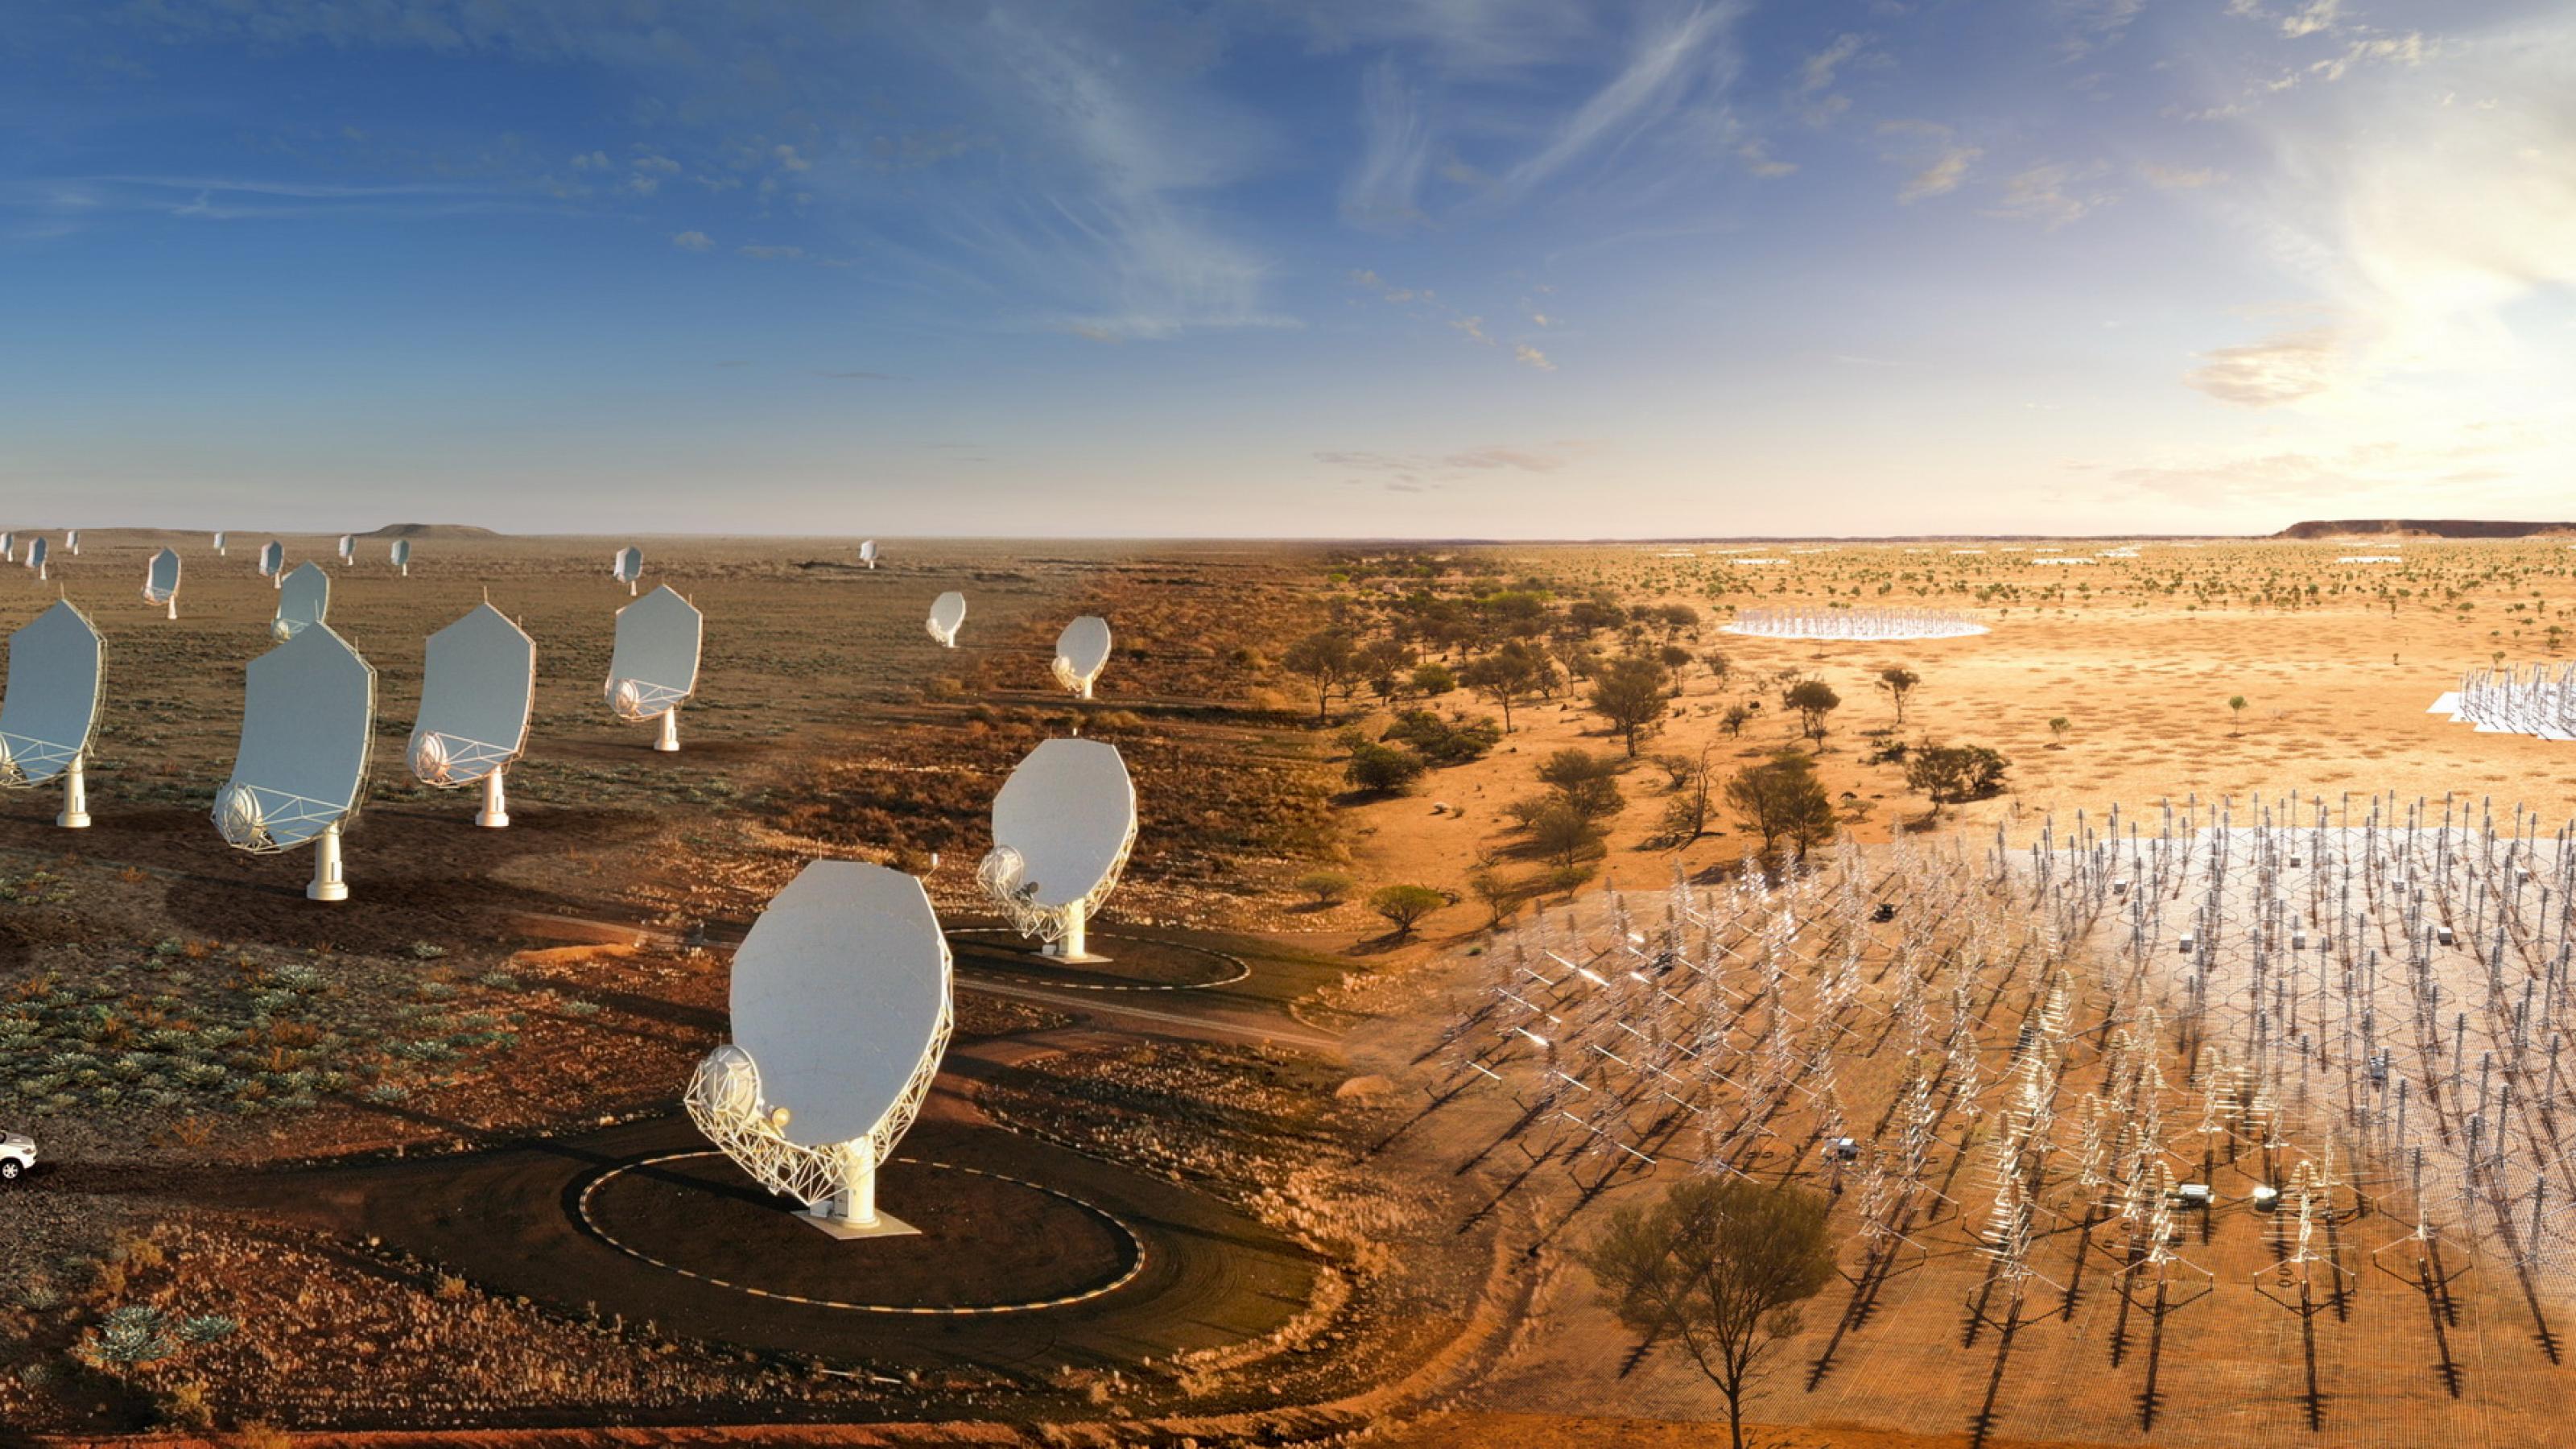 Eine Bildmontage zeigt links parabolförmige Radioteleskope, rechts stabförmige Antennen, die alle in einer Wüstenlandschaft stehen.